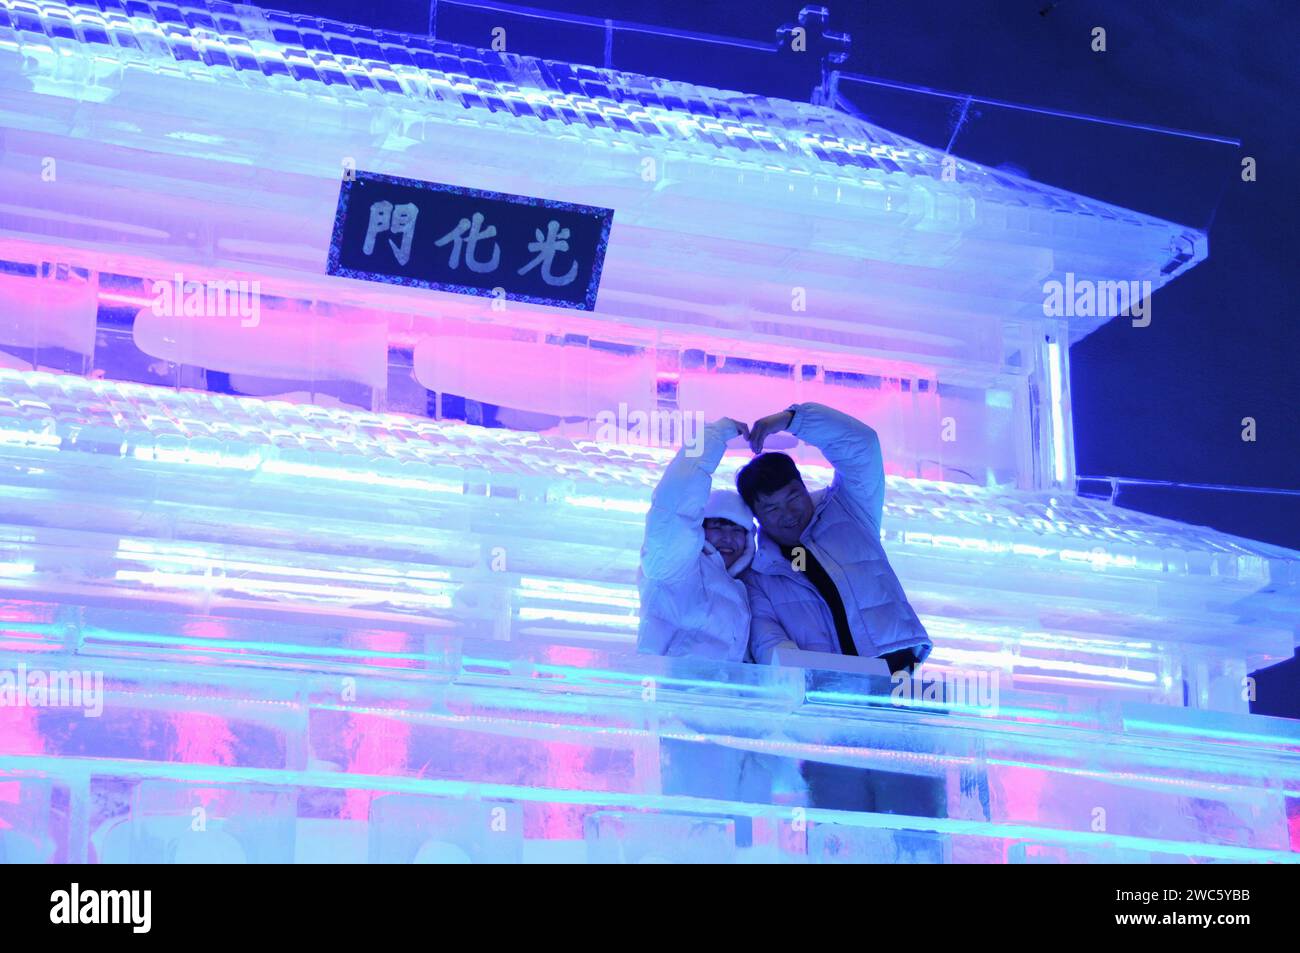 Province de Gangwon, Corée du Sud. 13 janvier 2024. Les touristes posent pour des photos devant les statues de Gwanghwamun réalisées par les sculpteurs de glace Harbin lors du festival de glace de Hwacheon Sancheoneo dans la province de Gangwon, Corée du Sud, le 13 janvier 2024. Capitale de la province la plus septentrionale de la Chine, Heilongjiang, Harbin est réputée pour être le « joyau de la glace et de la neige » du pays. Cette année, les sculpteurs de glace de Harbin ont été invités à créer des sculptures de glace pour le festival de glace de Hwacheon Sancheoneo, l'un des festivals d'hiver sud-coréens les plus populaires. Crédit : Yang Chang/Xinhua/Alamy Live News Banque D'Images